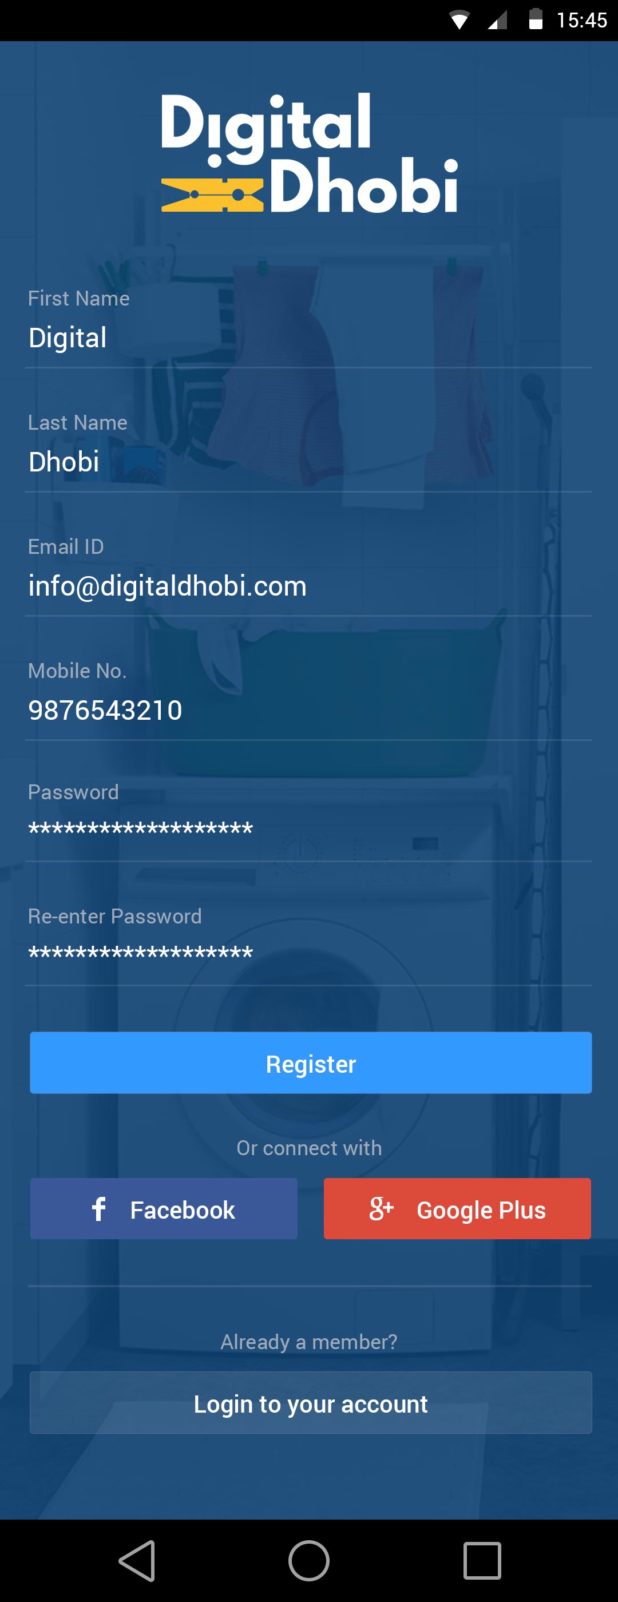 register page digital dhobi